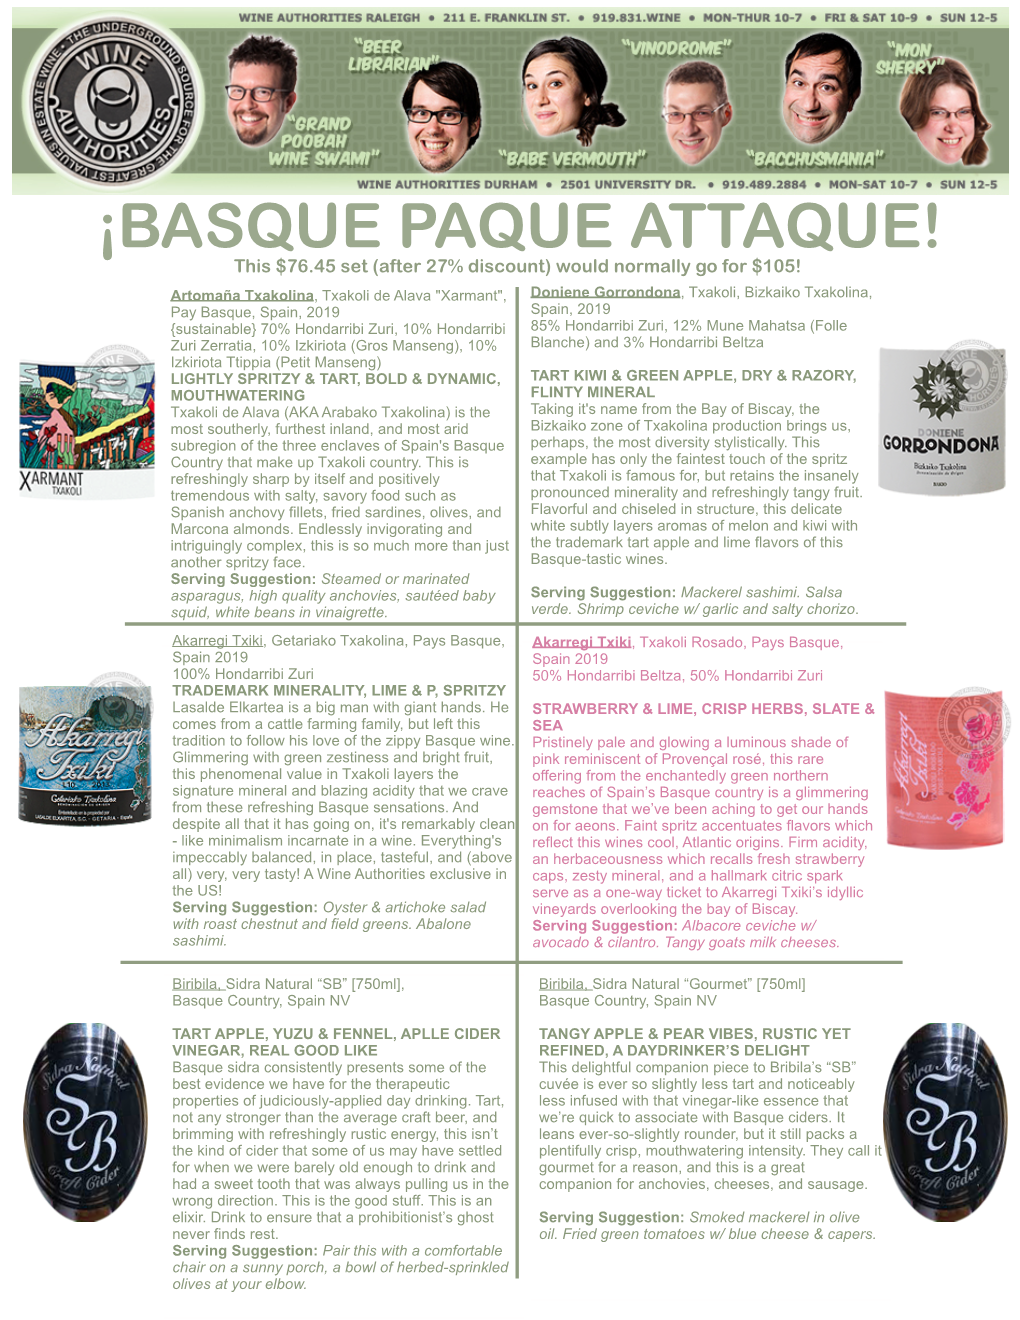 ¡Basque Paque Attaque!